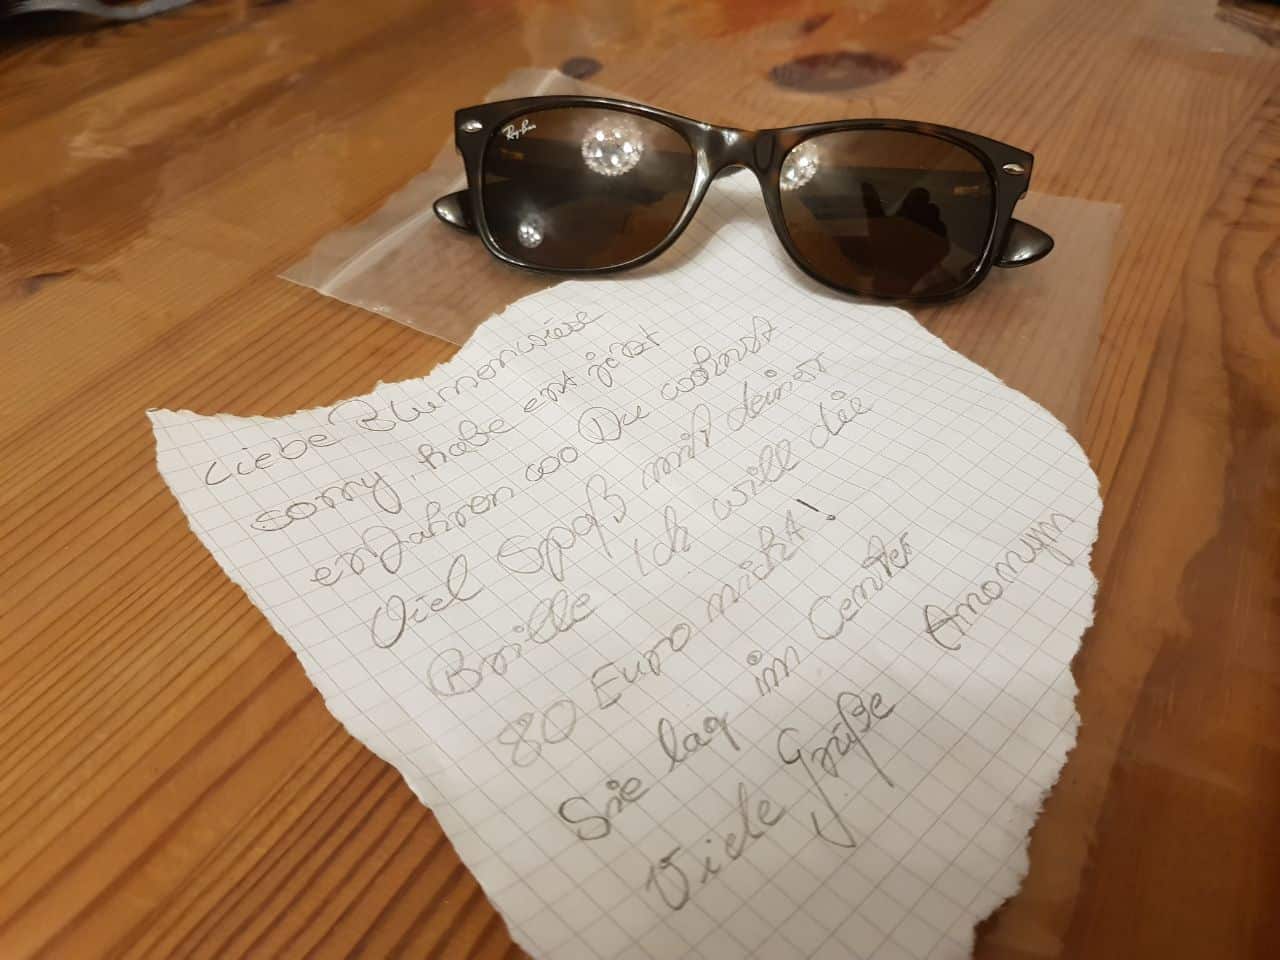 Bernau: Verlorene Sonnenbrille mit Happy End und ohne Finderlohn